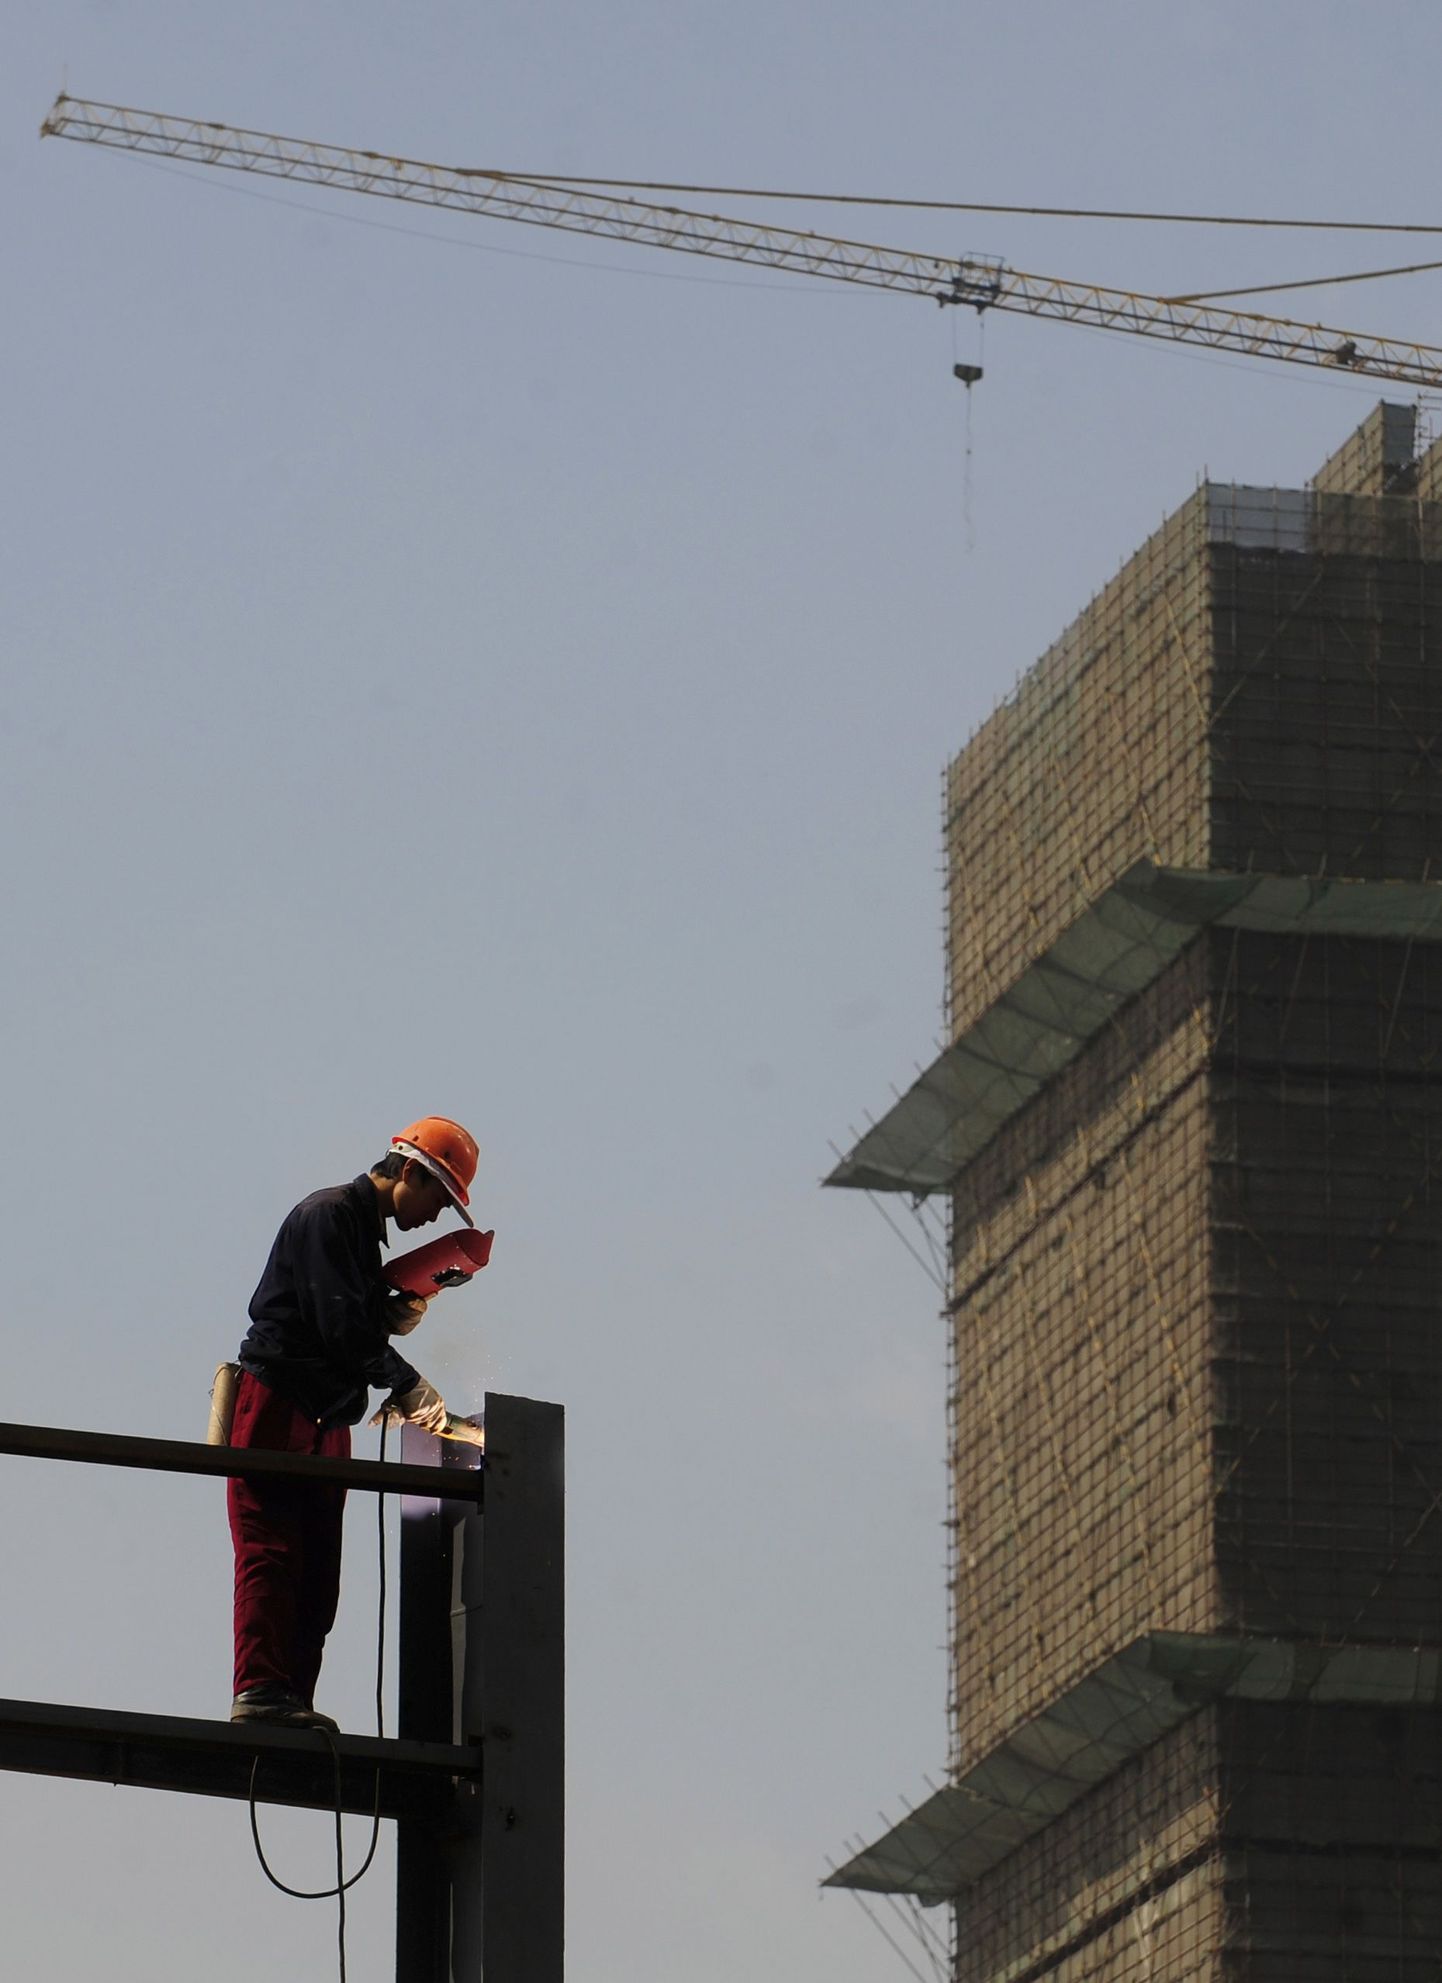 Ehitustööline Hiina Anhui provintsis Hefeis kinnisvaraprojekti reklaami alust keevitamas.